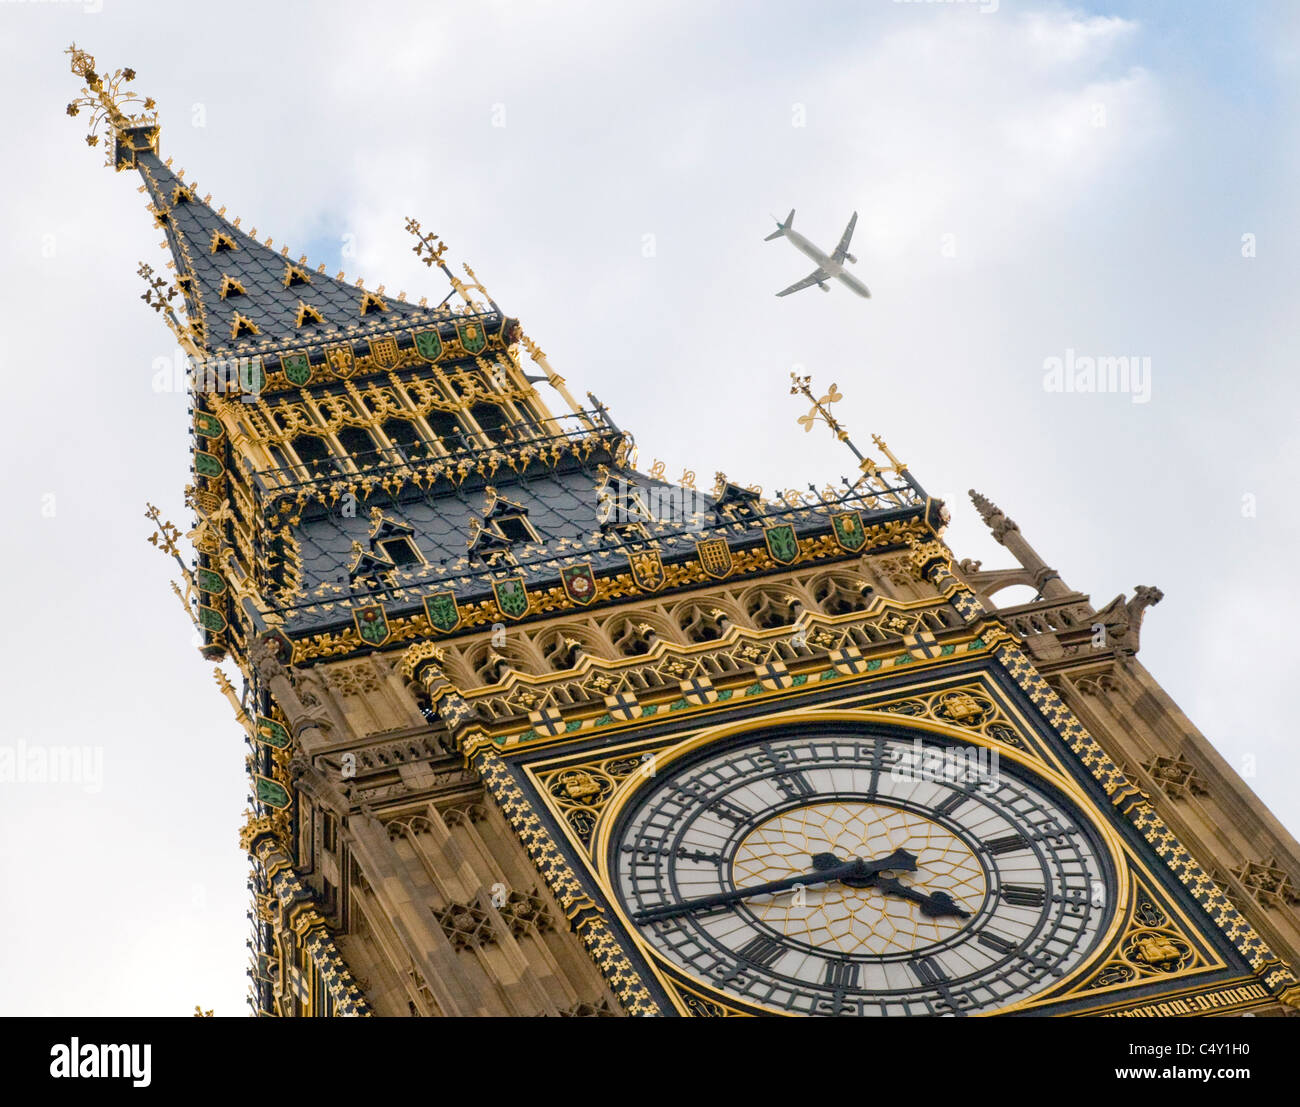 Close up obscure vue sur Big Ben clock tower à Westminster, Londres avec avion volant au-dessus. Banque D'Images